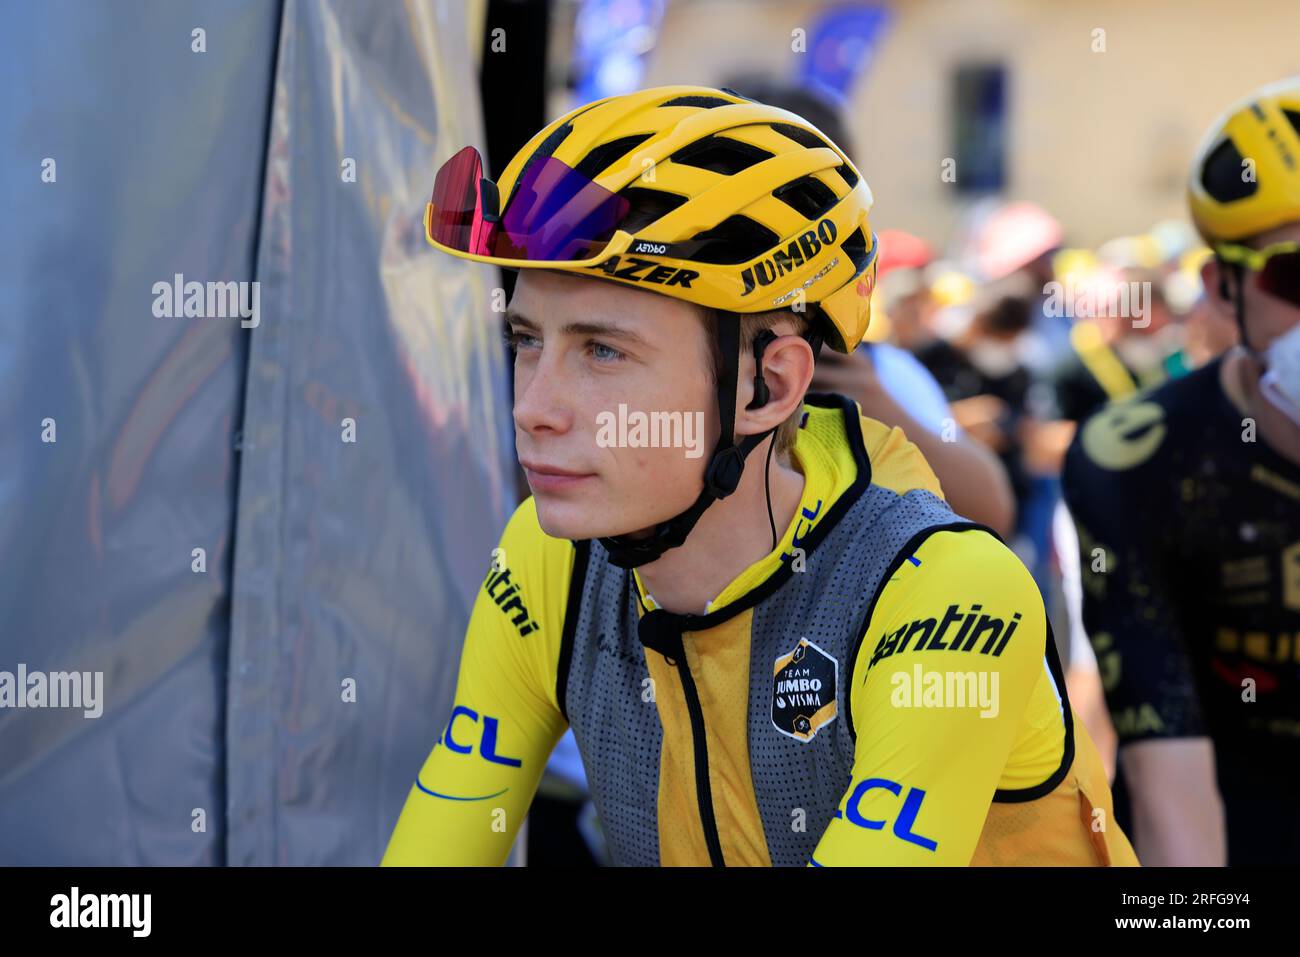 Canicule, le coureur cycliste danois maillot jaune Jonas Vingegaard s’est mis à l’ombre avant le départ de la 9ème étape du Tour de France le 9 juille Foto Stock